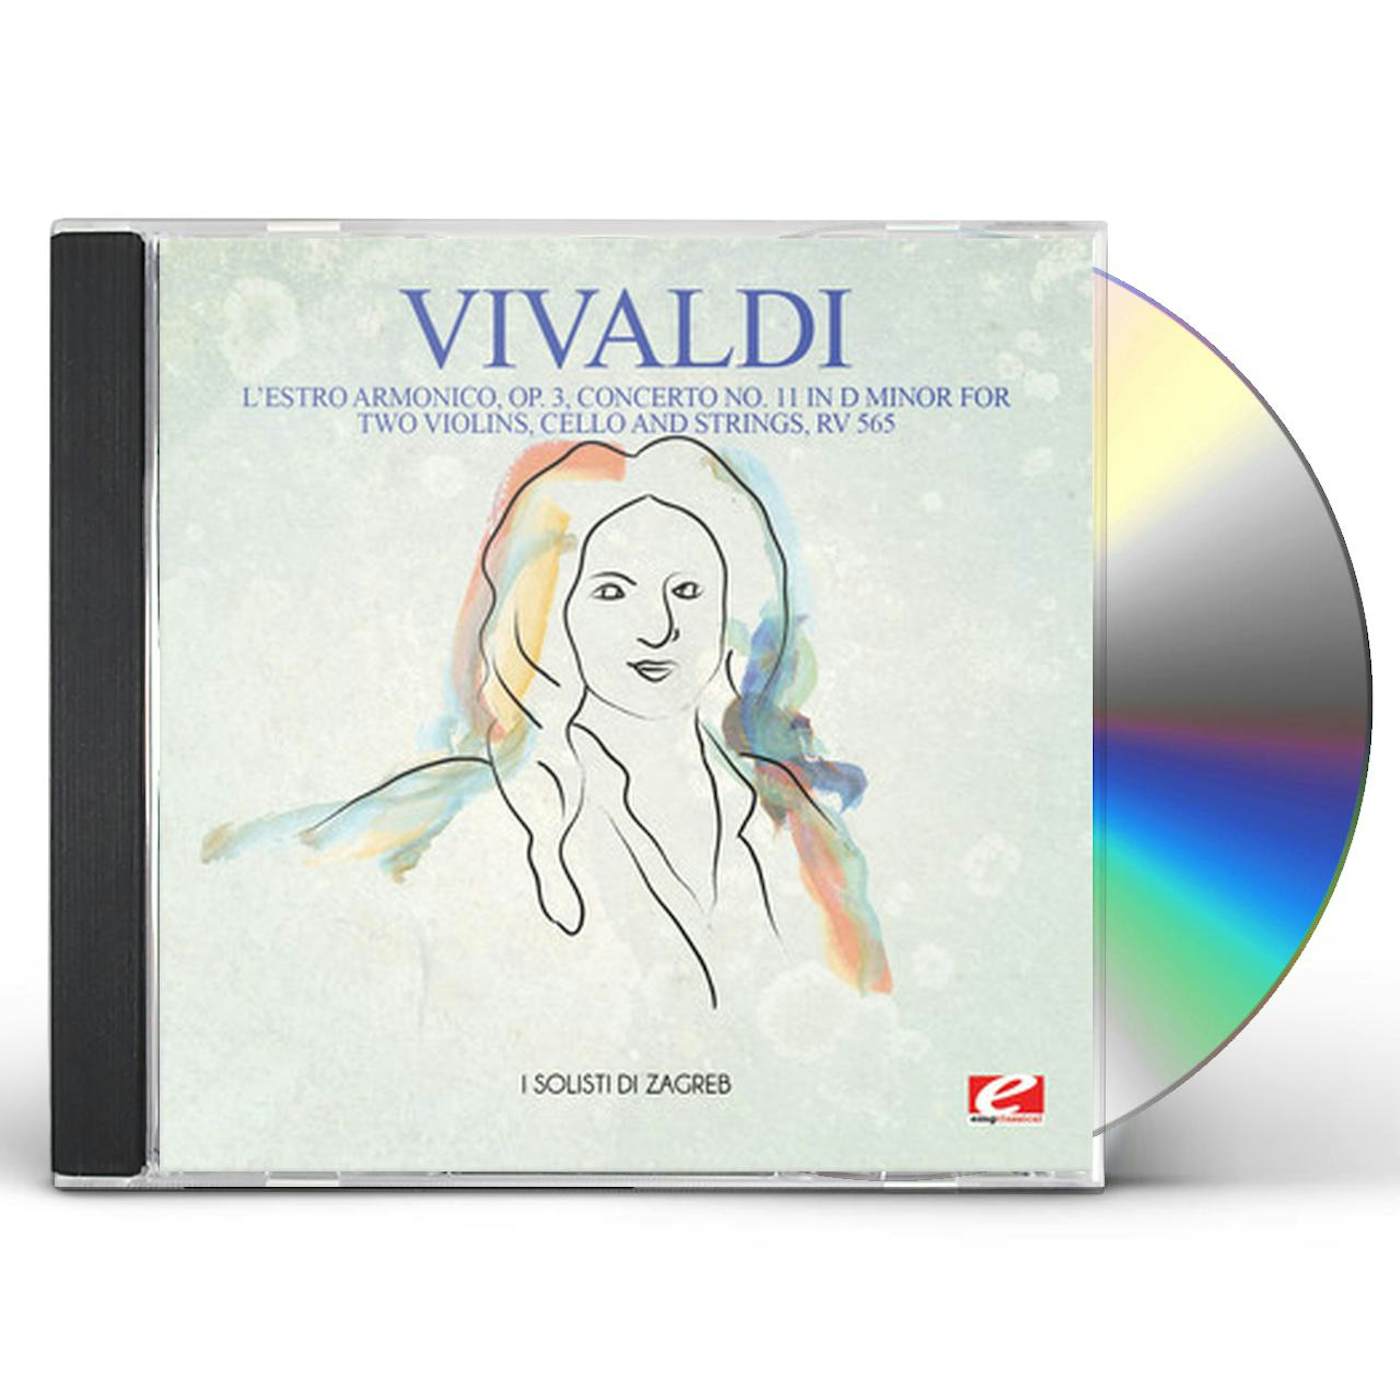 Antonio Vivaldi L'ESTRO ARMONICO OP. 3 CONCERTO NO. 11 IN D MINOR CD